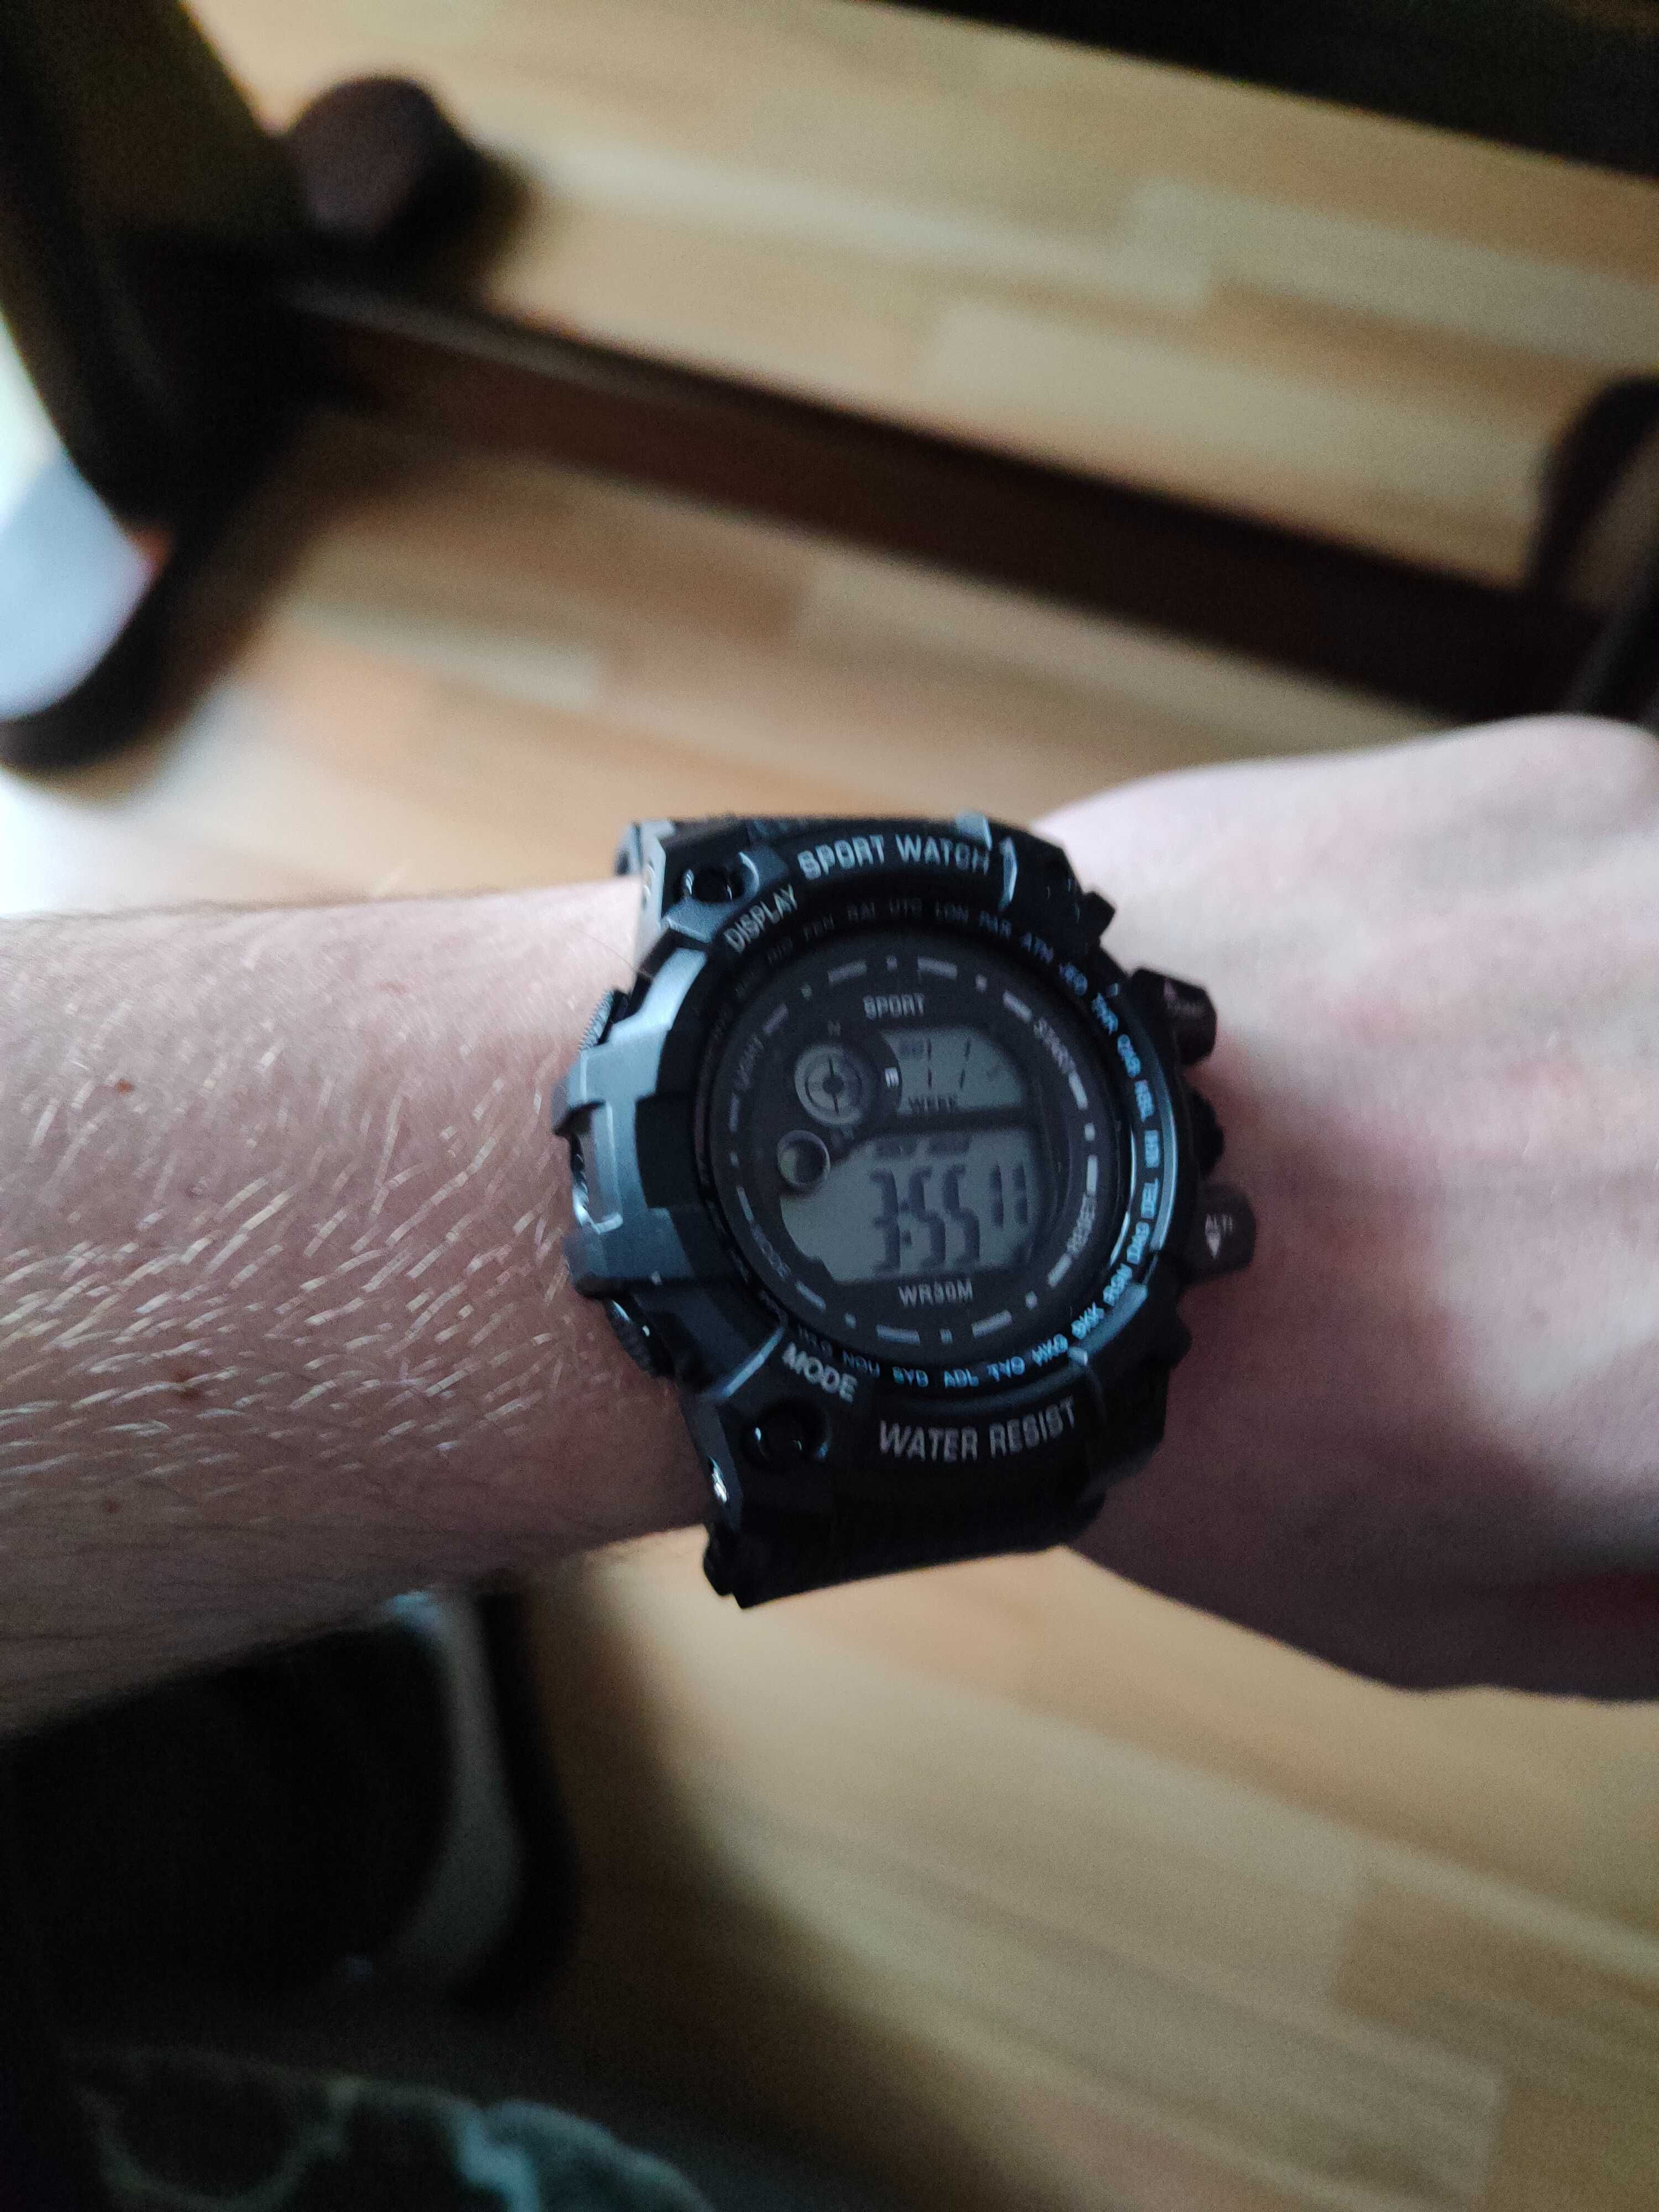 Zegarek sport watch czarny